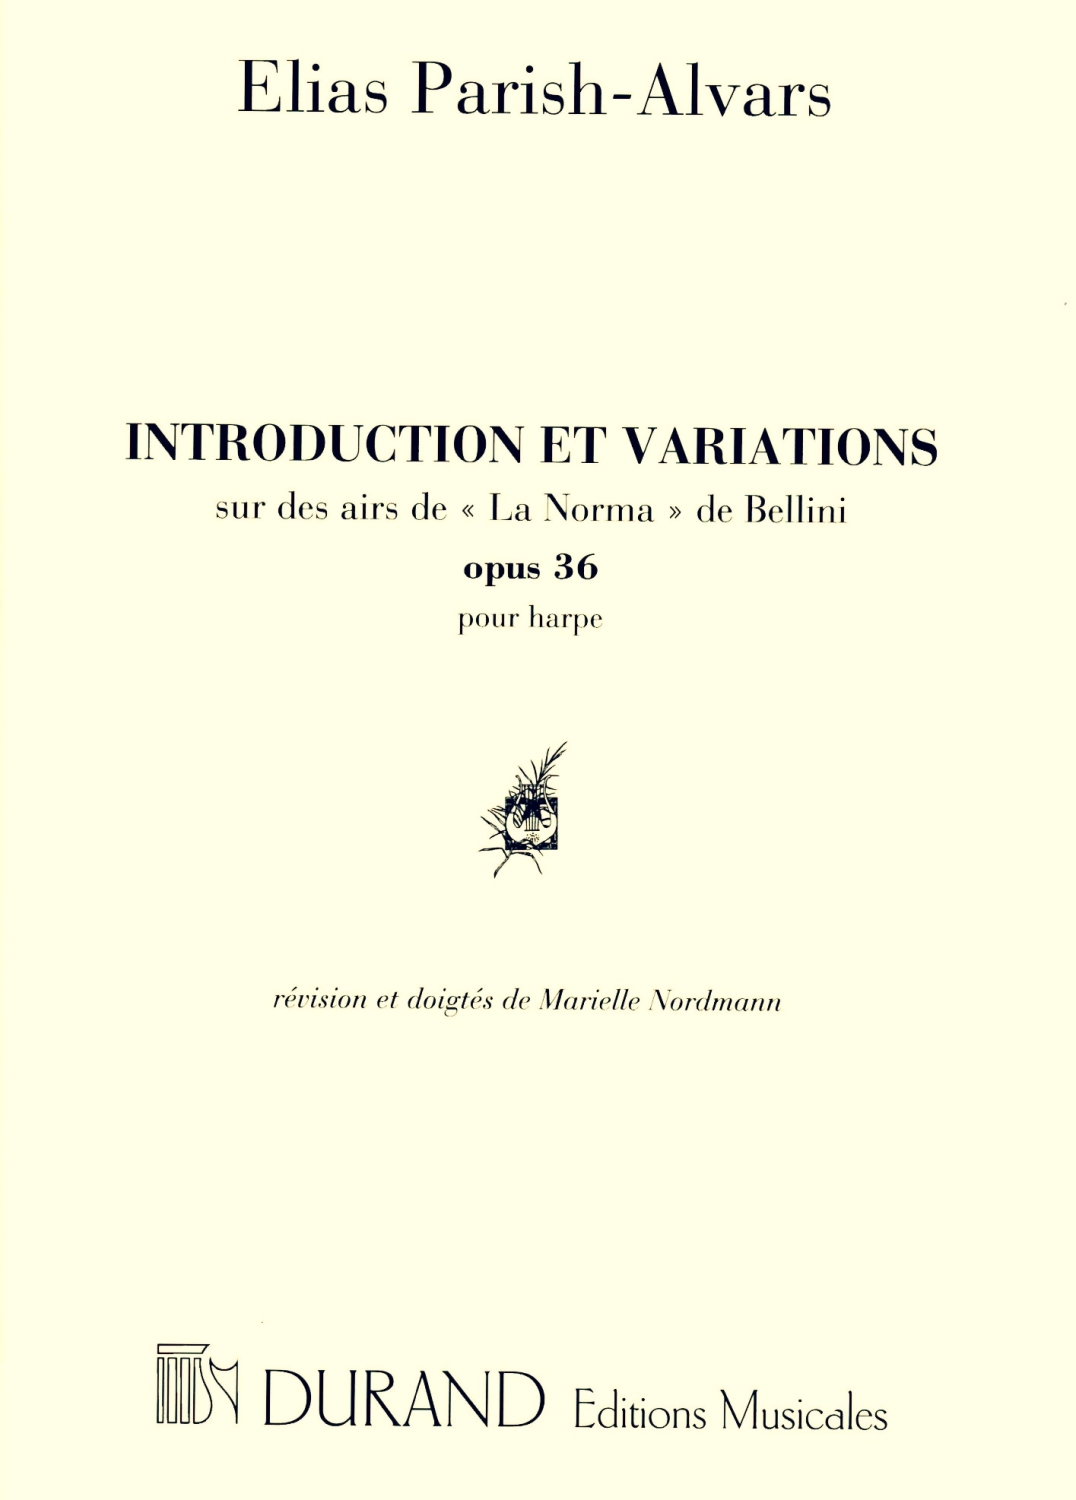 Introduction Et Variations sur des airs de 